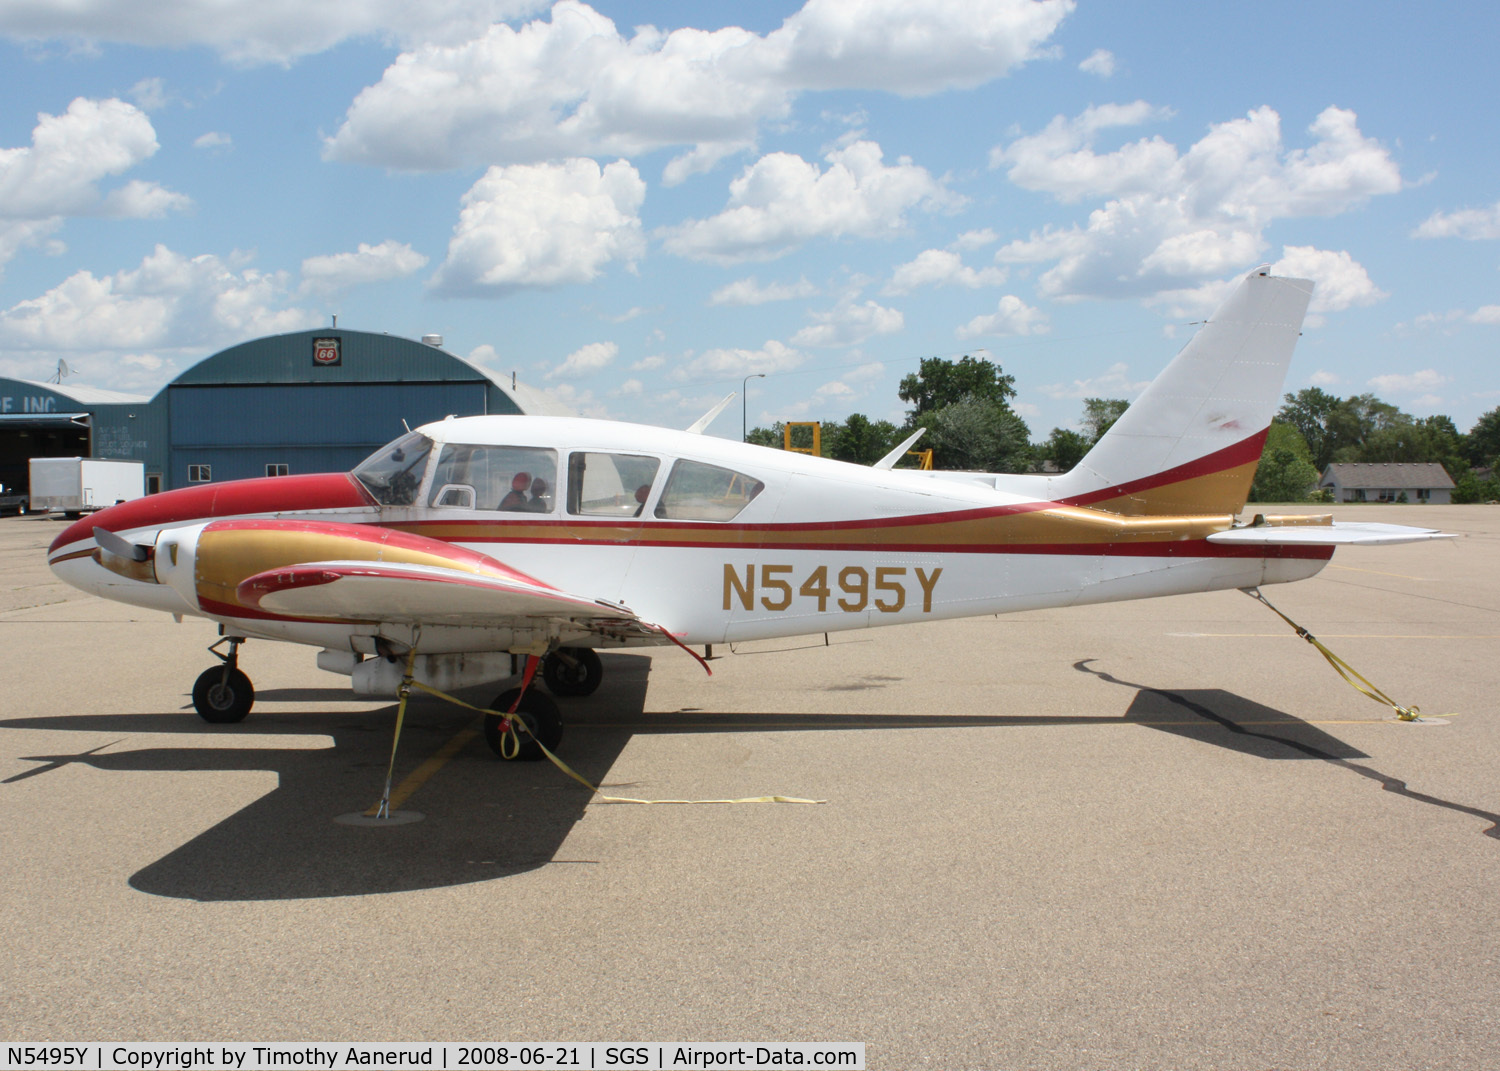 N5495Y, 1964 Piper PA-23-250 C/N 27-2588, Parked at South Saint Paul